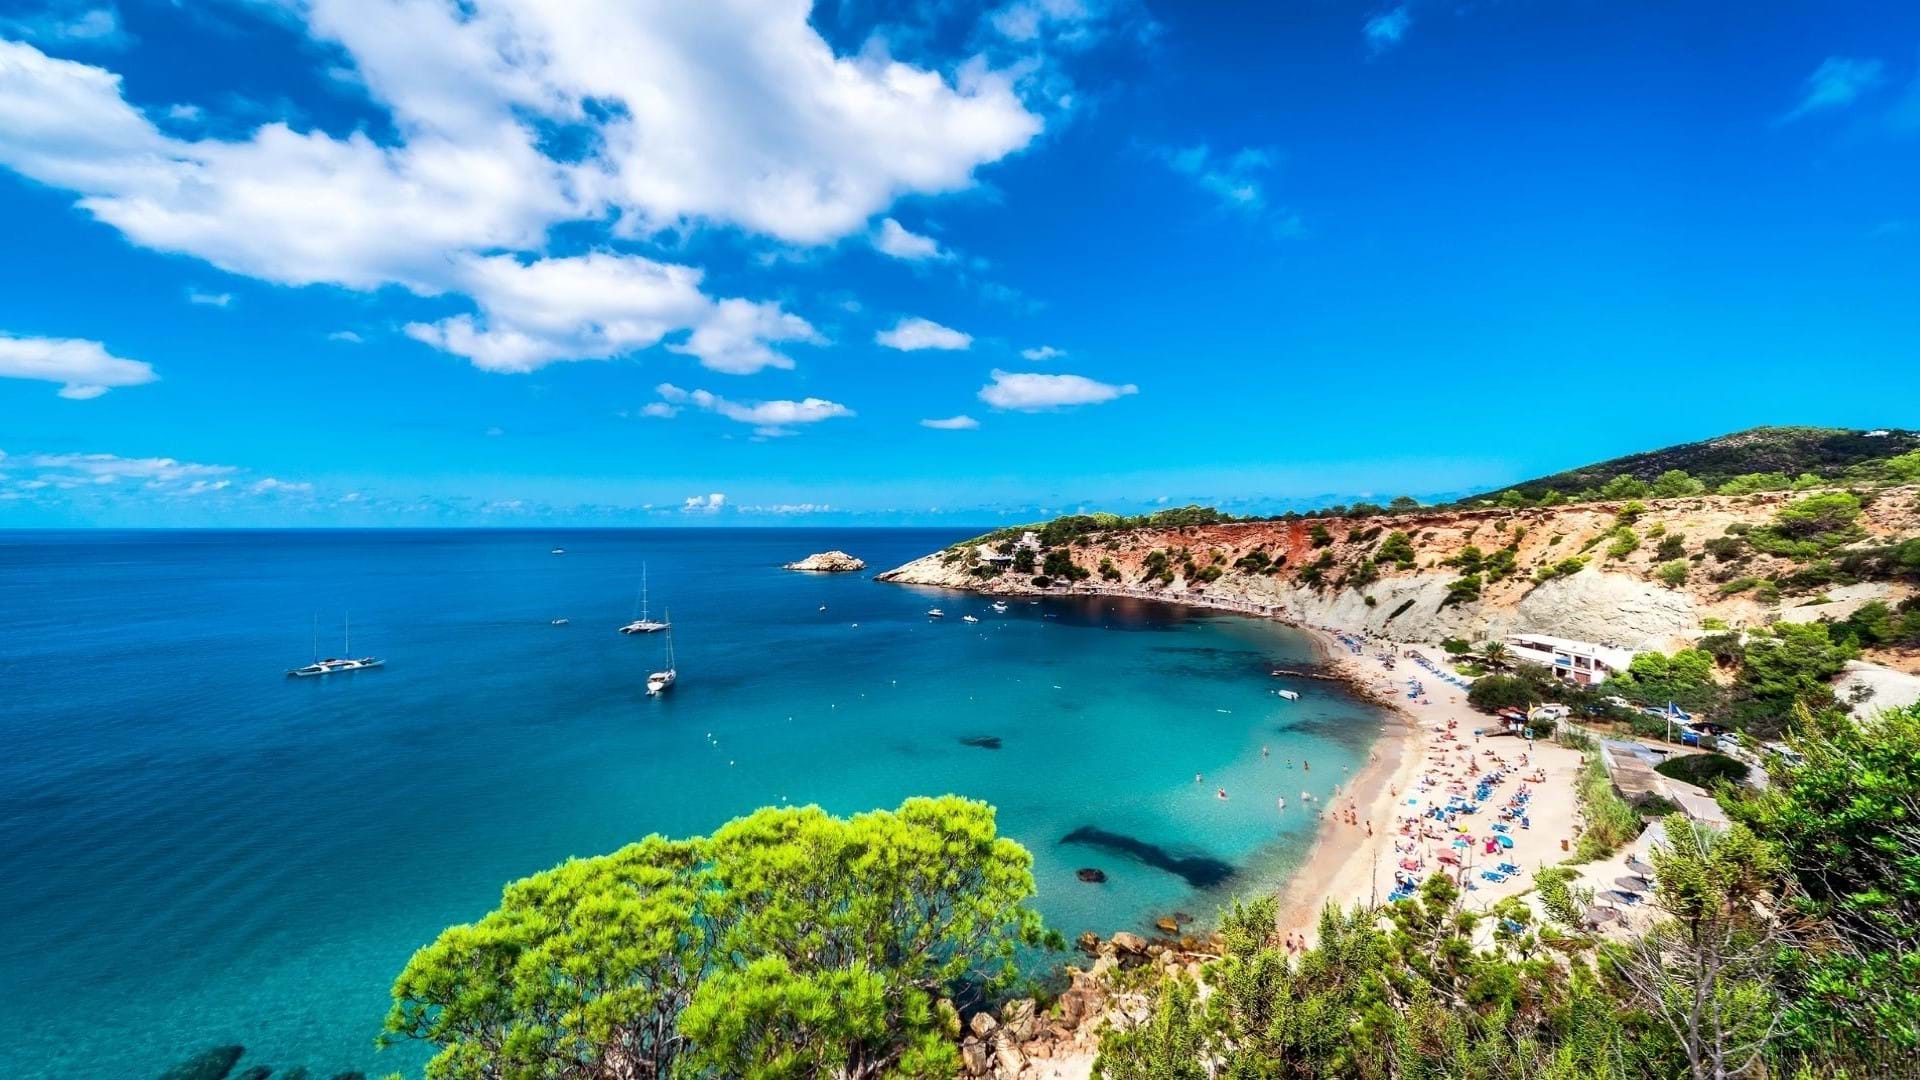 Jedna od najleopših plaža na Ibici u Španiji sa tirkiznom bojom mora i prelepom obalom.